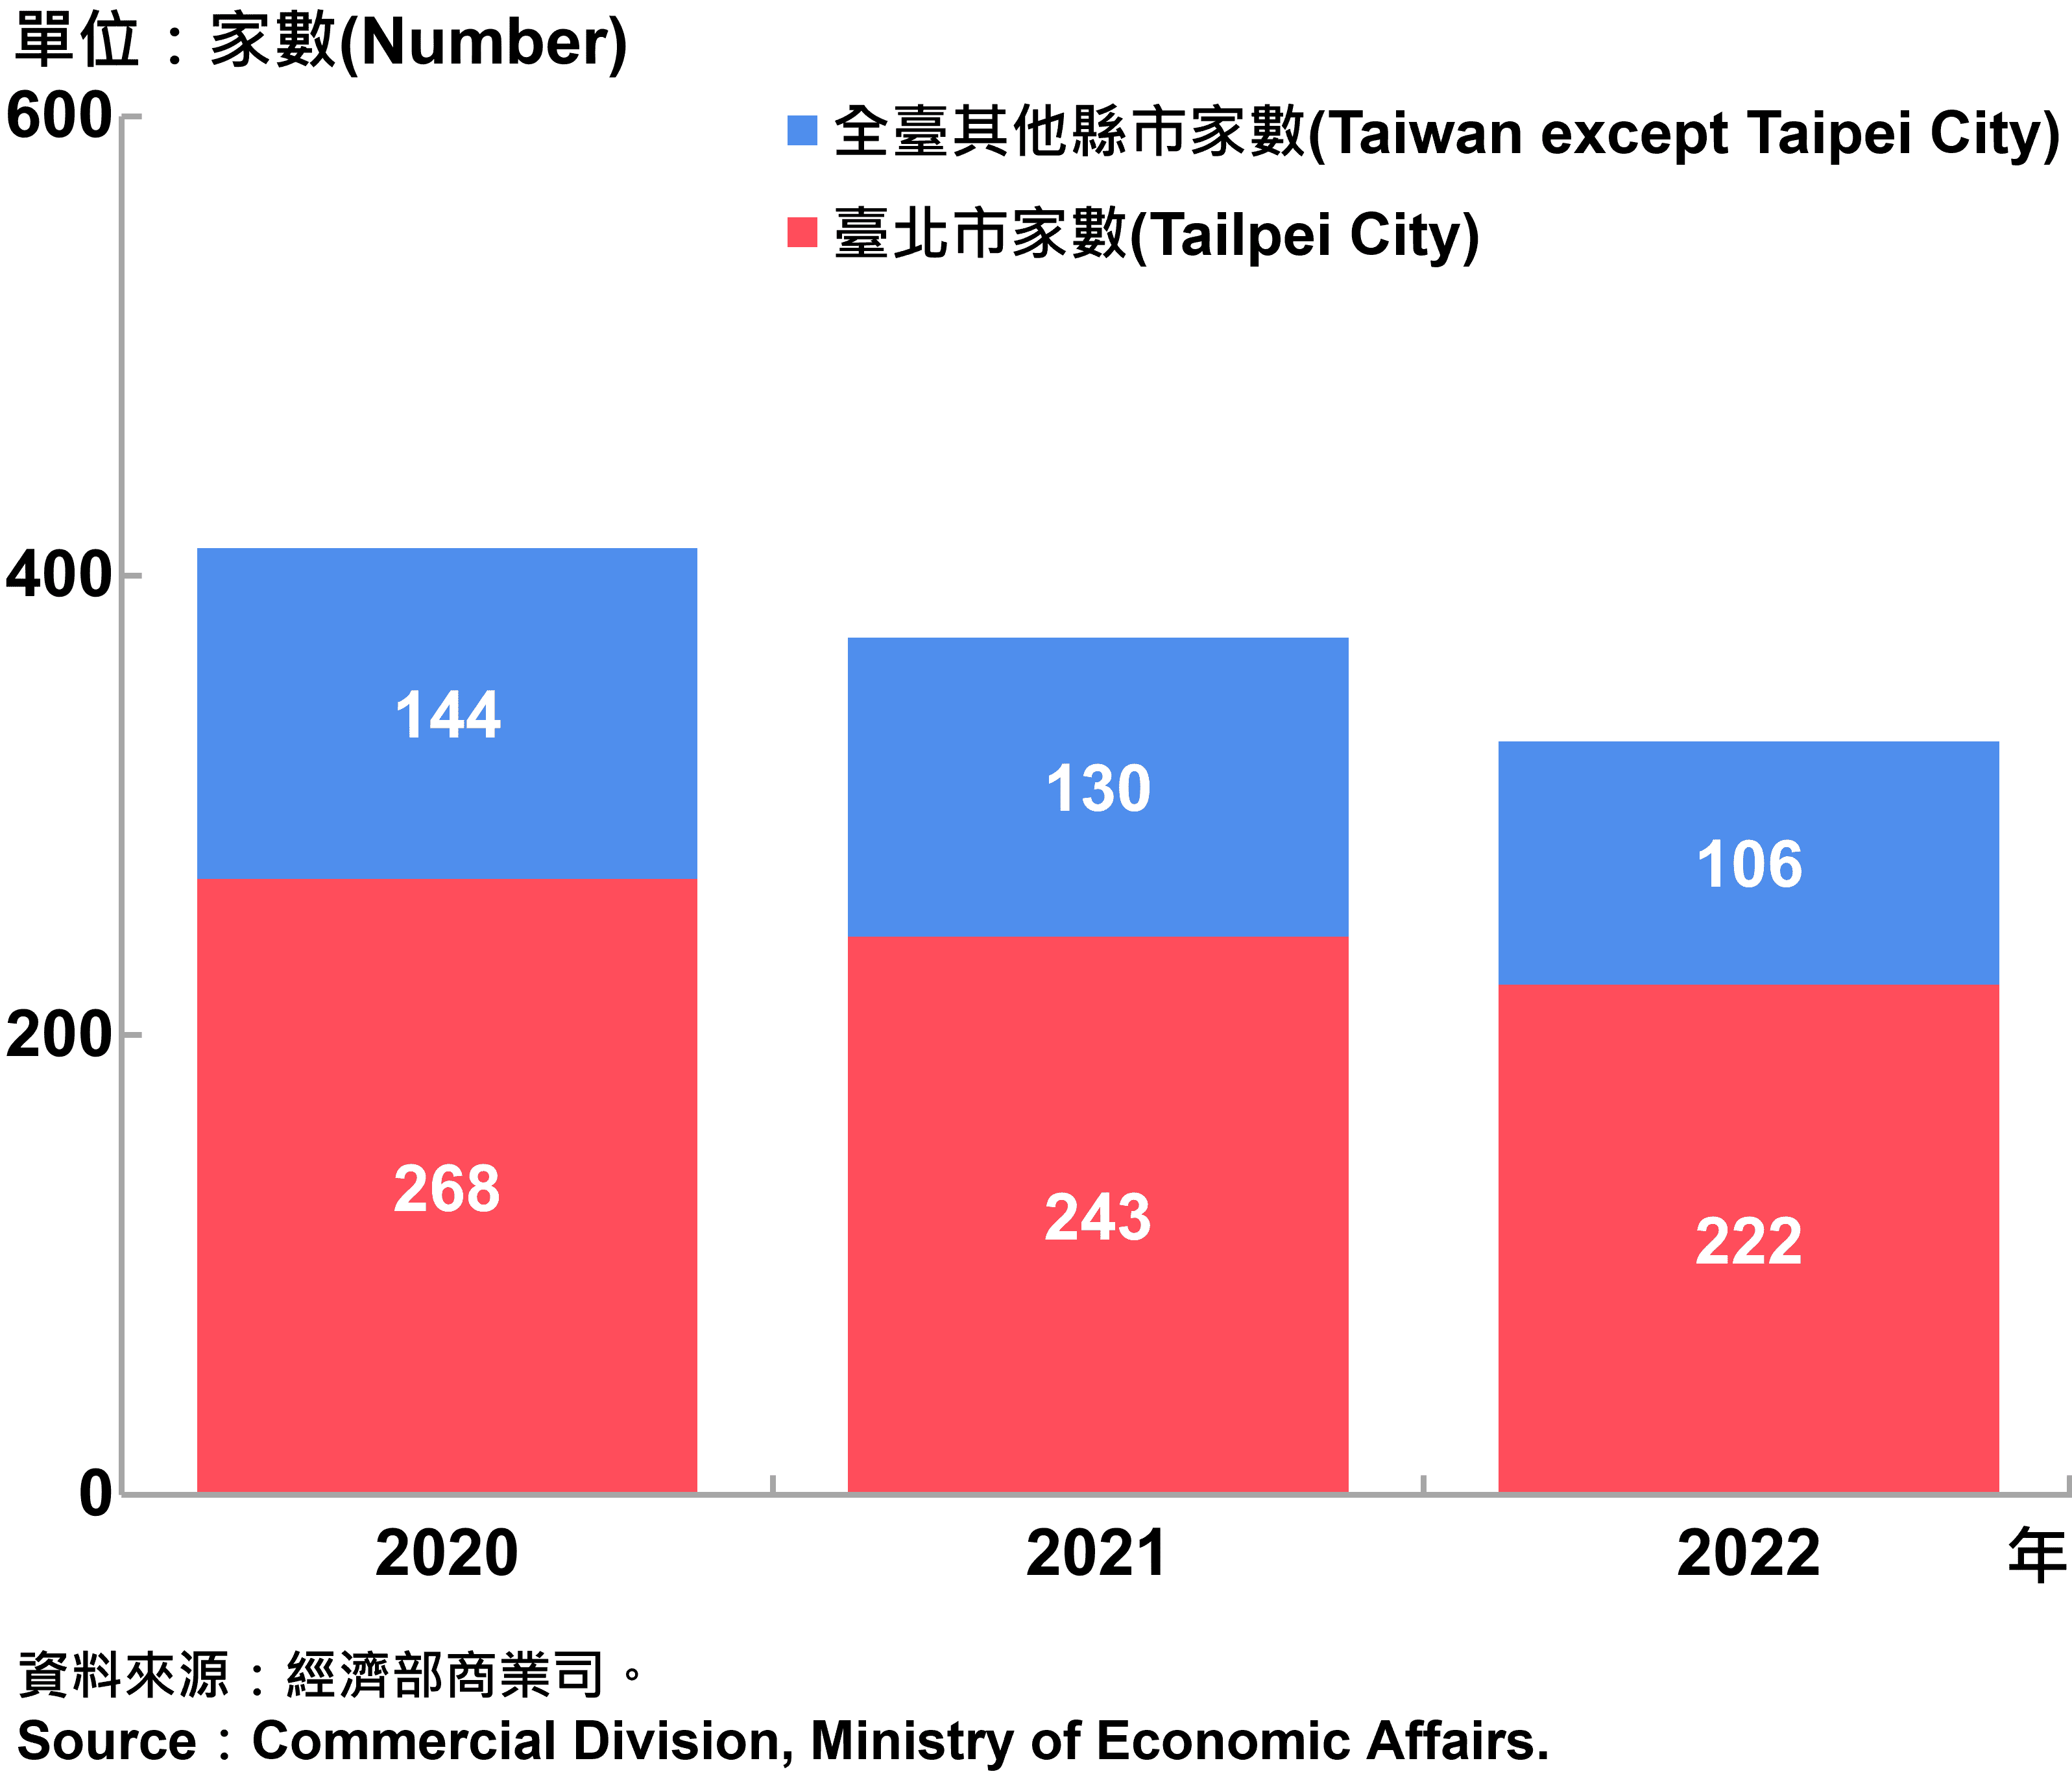 臺北市外商公司新設立家數—2022 Number of Newly Established Foreign Companies in Taipei City—2022